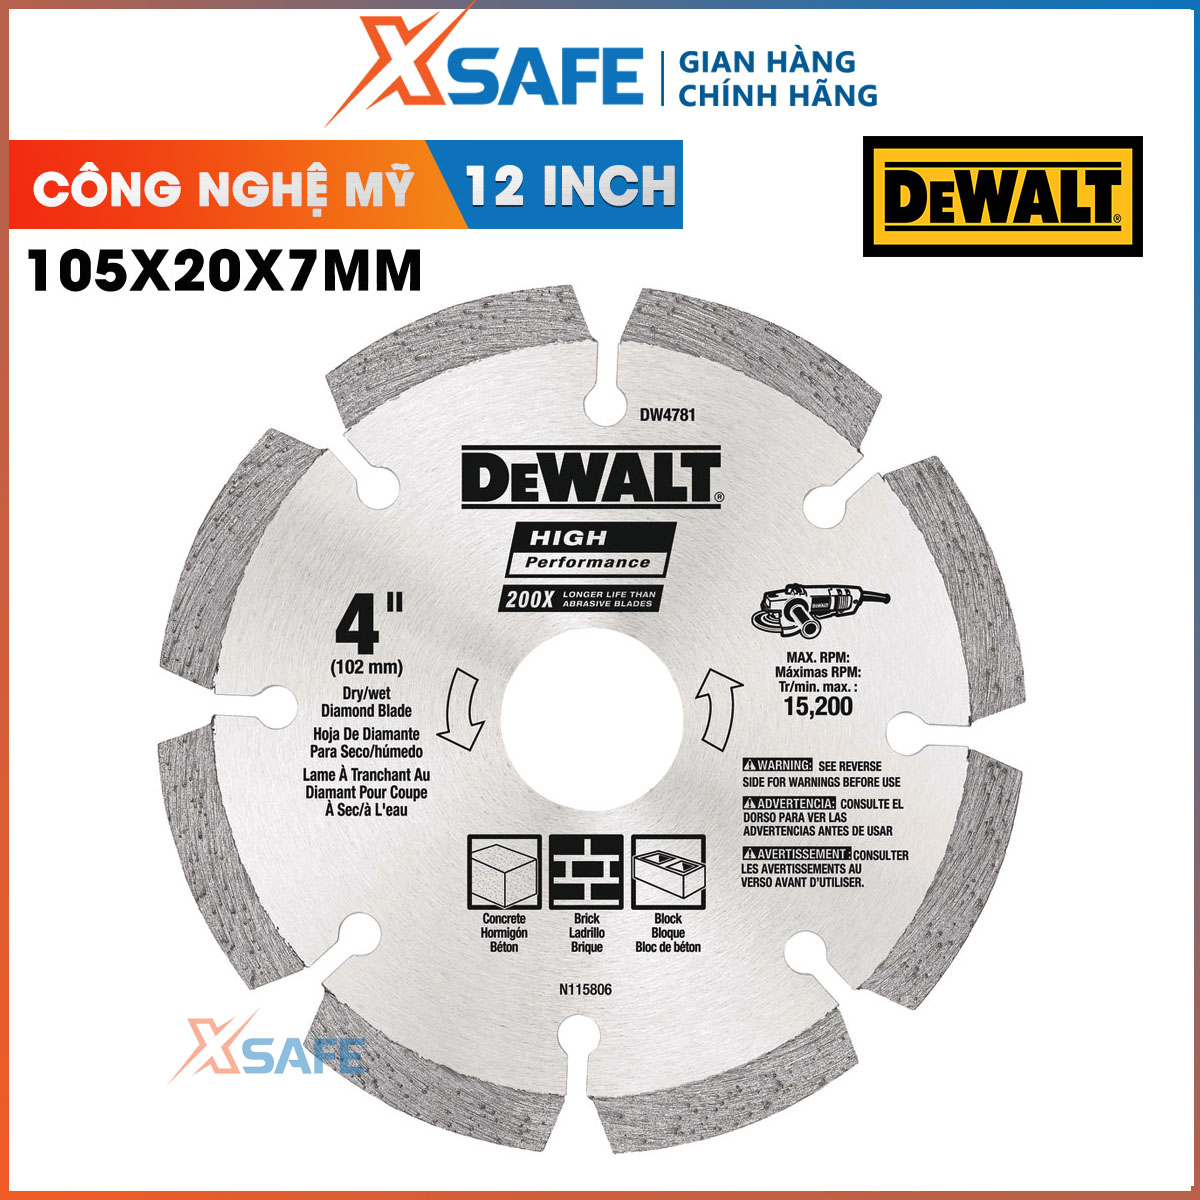 Đĩa cắt gạch 105 x 20 mm 7mm DEWALT DW4781-B1 công nghệ mỹ Đĩa cắt DeWalt có đường kính lưỡi cắt 105 mm dùng để cắt bê tông gạch đá